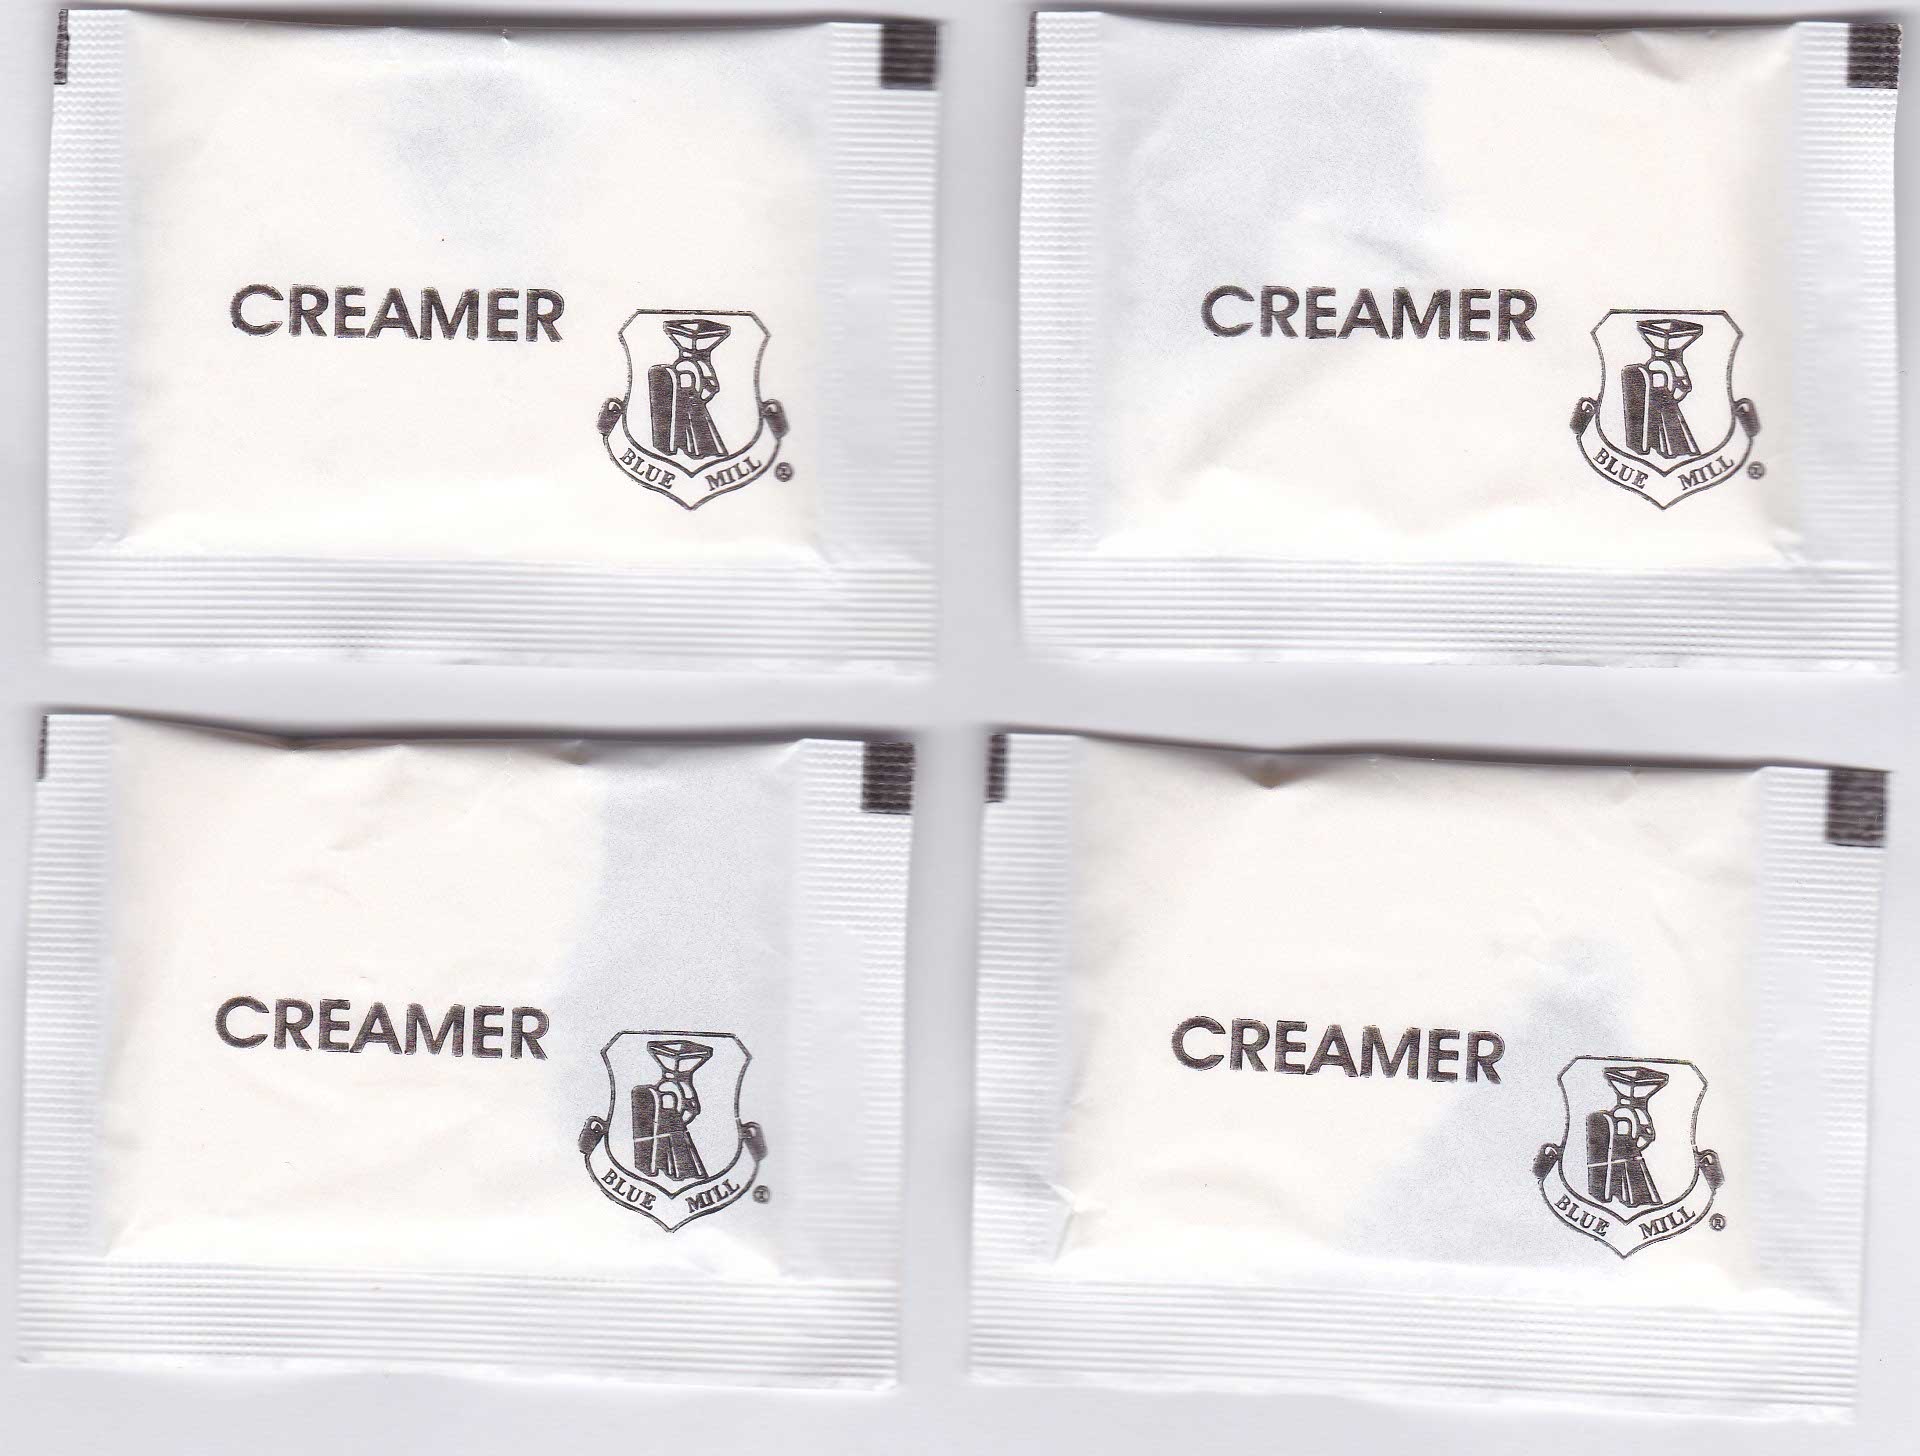 Branded Creamer sachets